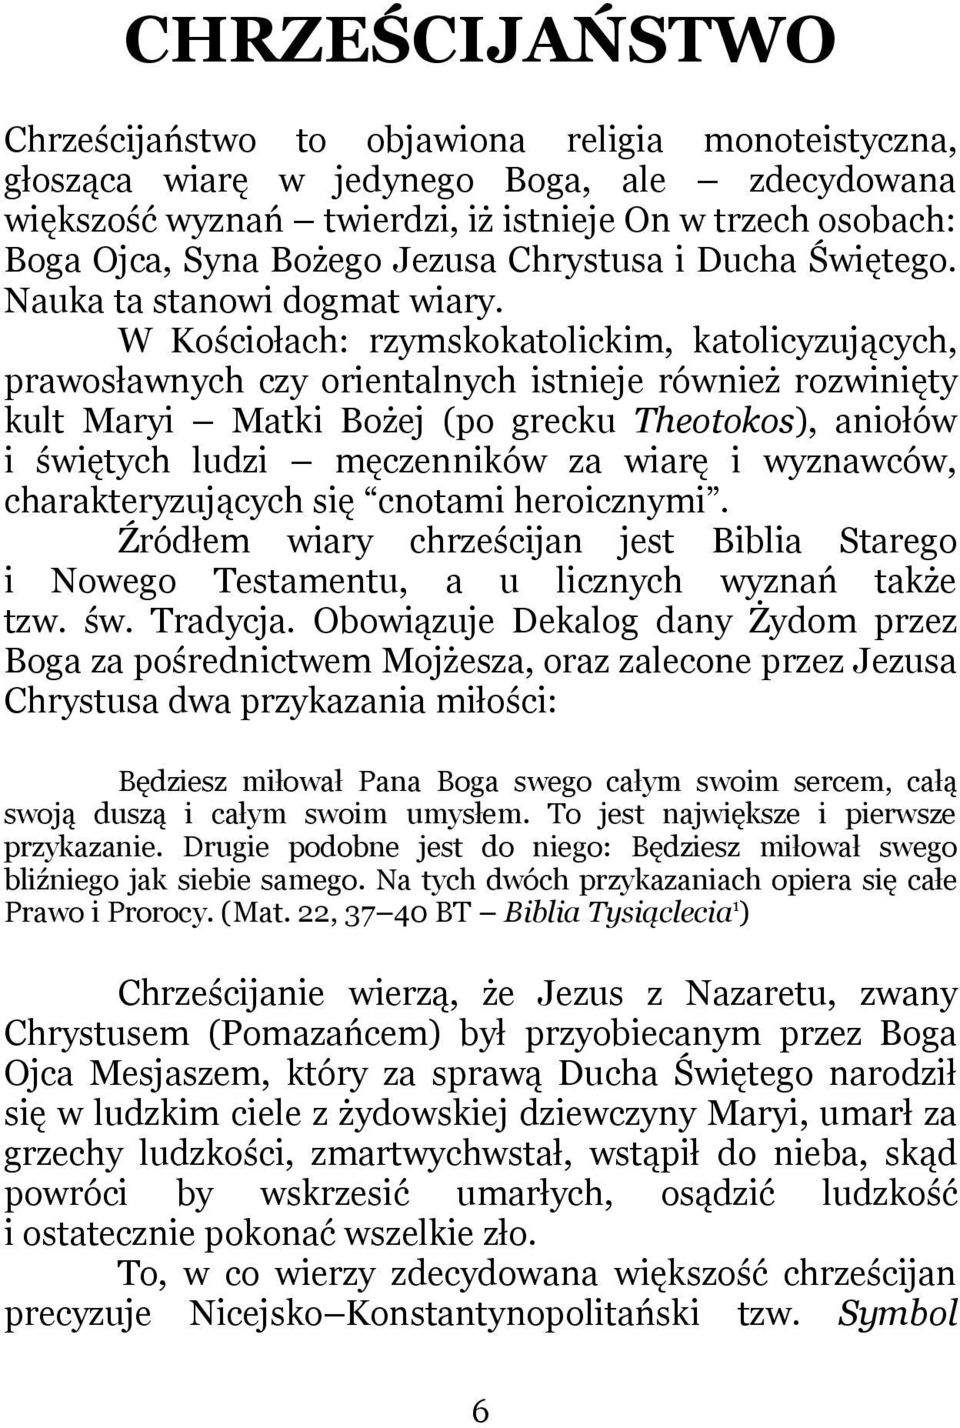 W Kościołach: rzymskokatolickim, katolicyzujących, prawosławnych czy orientalnych istnieje również rozwinięty kult Maryi Matki Bożej (po grecku Theotokos), aniołów i świętych ludzi męczenników za